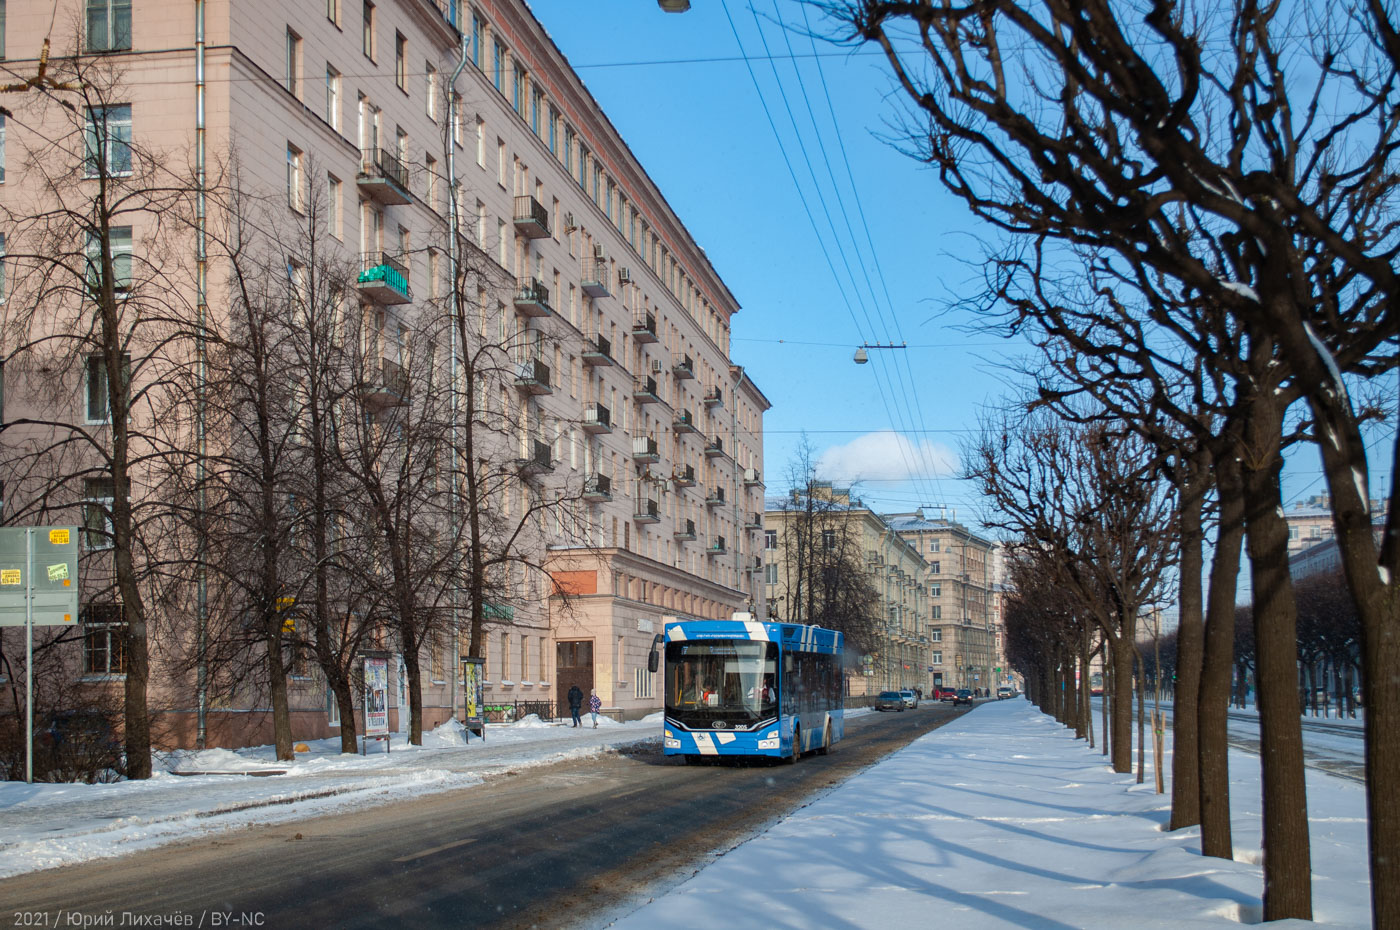 Санкт-Петербург — Троллейбусные линии и инфраструктура